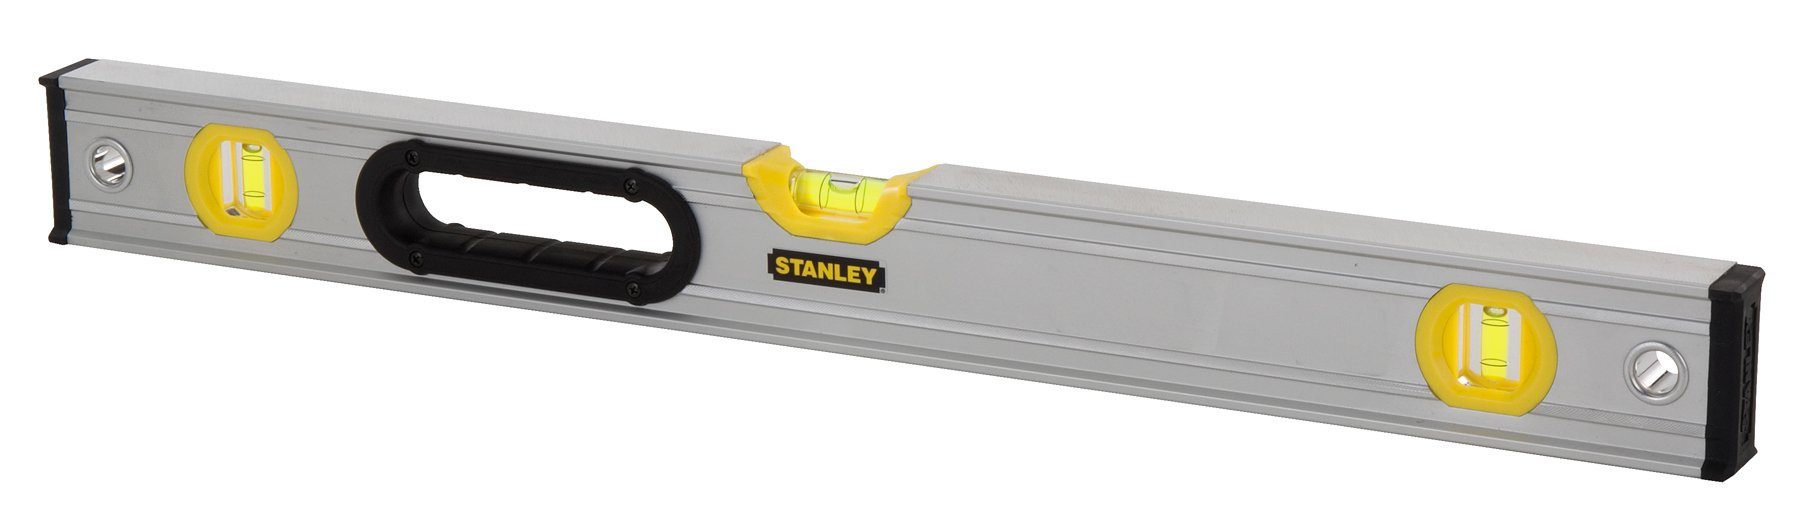 Stanley by Black & Decker Wasserwaage 0-43-679, 200cm